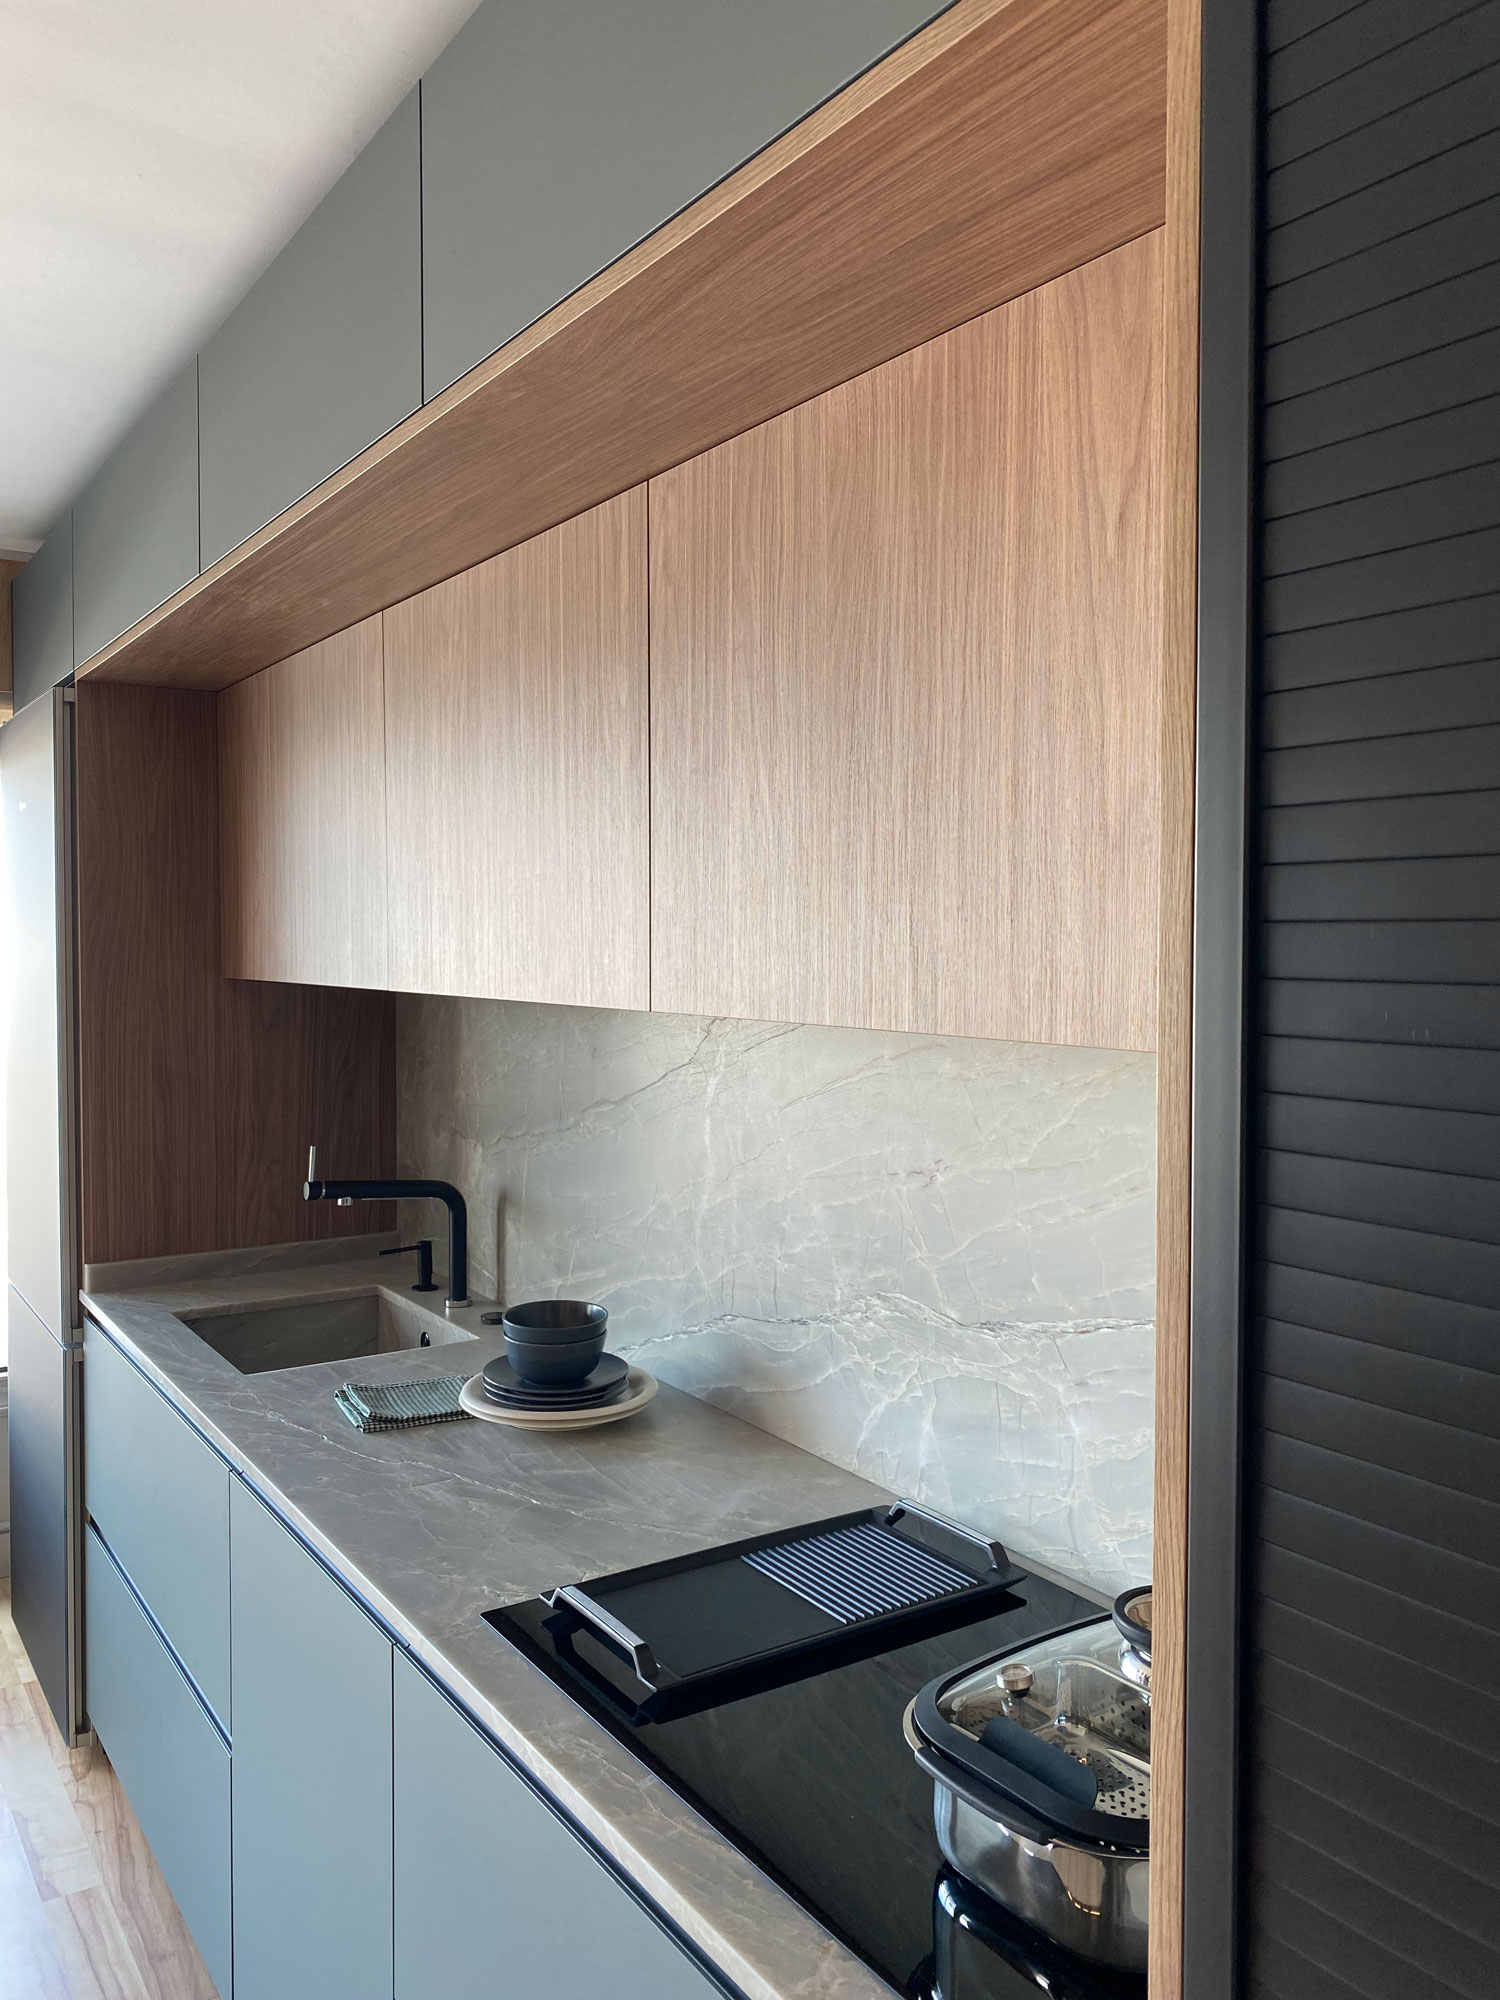 Schmidt - Distribuir los muebles de la cocina a lo largo de solo una pared  es una buena opción (o incluso la única) en espacios reducidos. Apuesta por  armarios altos con puertas